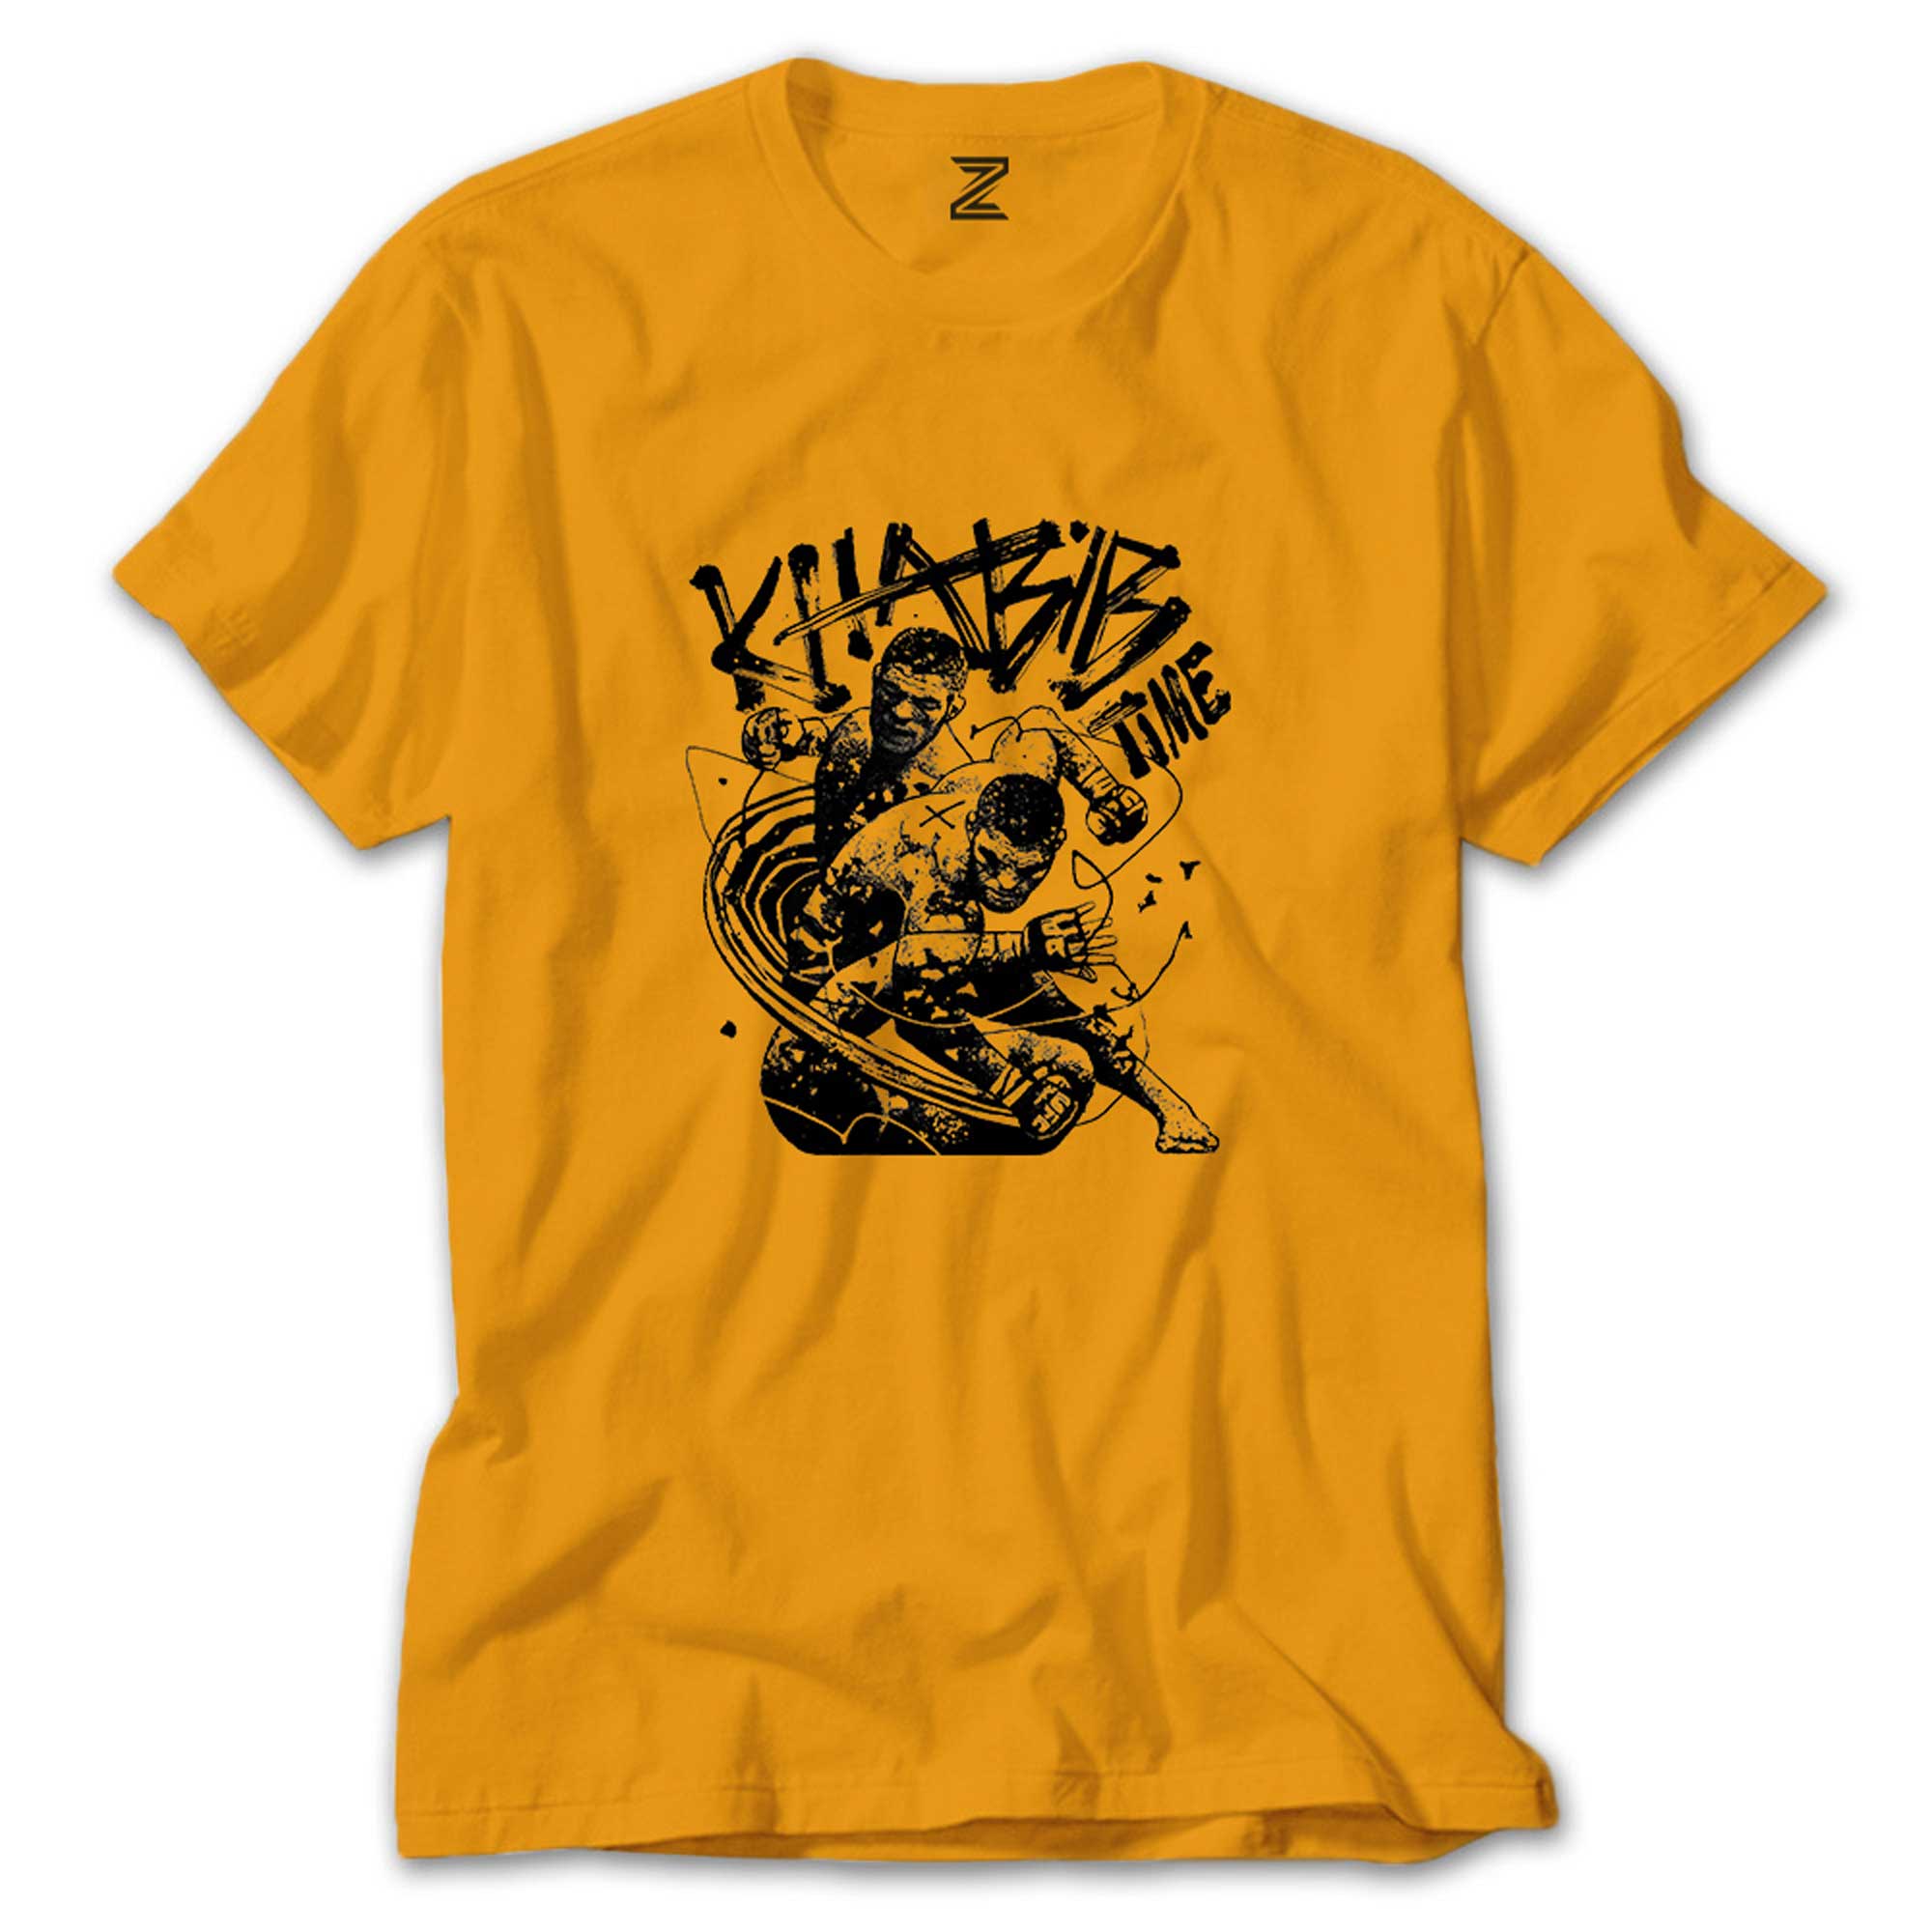 İndirimli Khabib Nurmagomedov Ufc Classic Sarı Tişört 